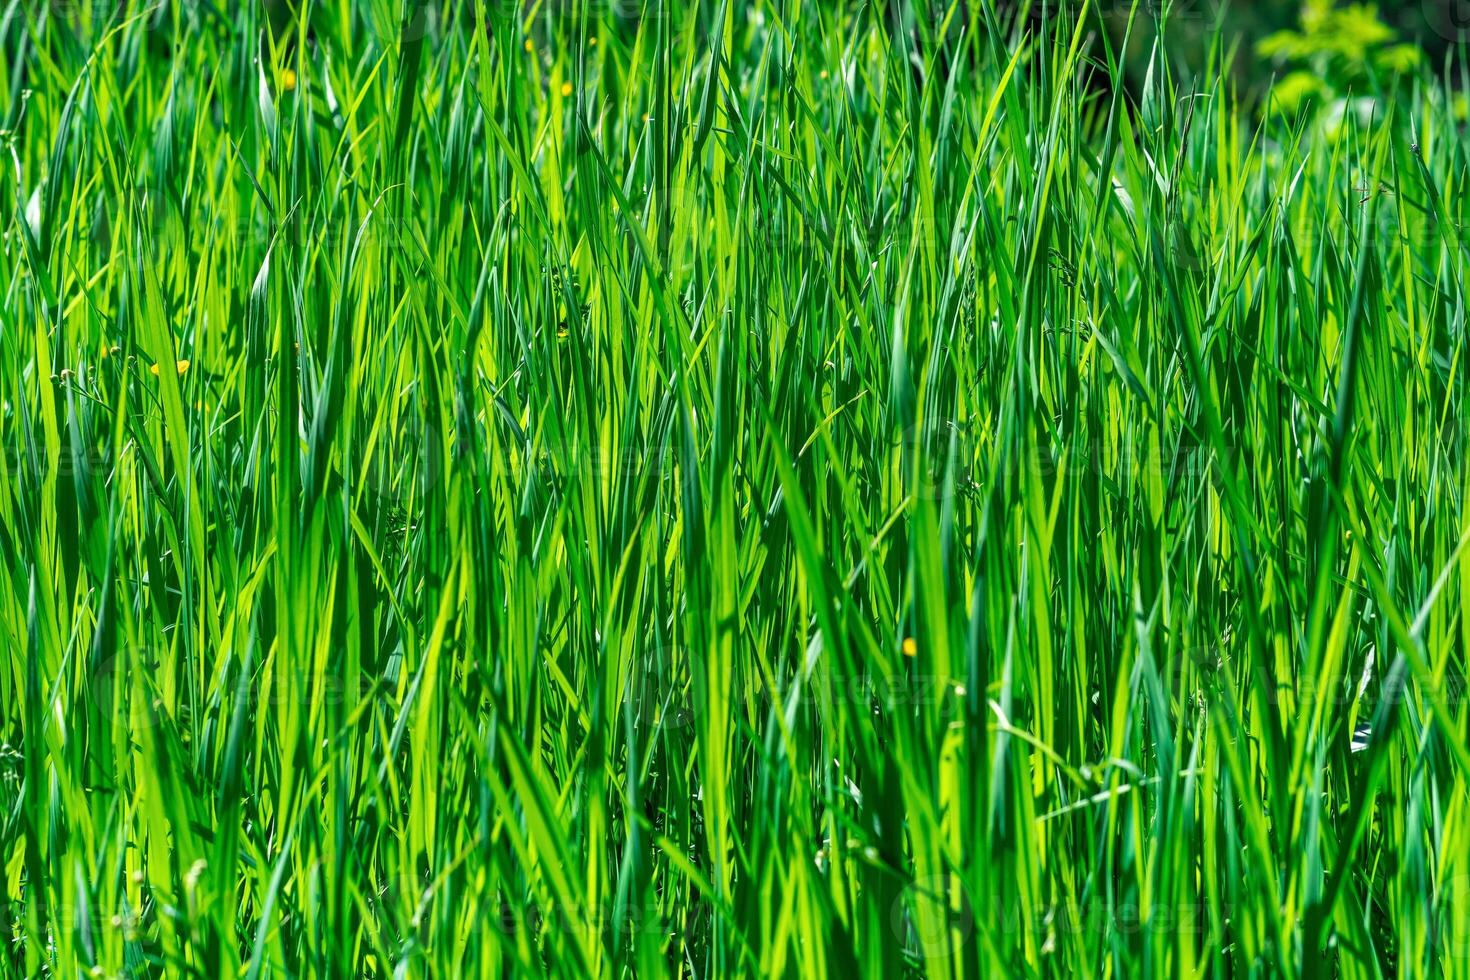 Naturel Contexte - fourrés de vert herbe carex illuminé par le Soleil photo